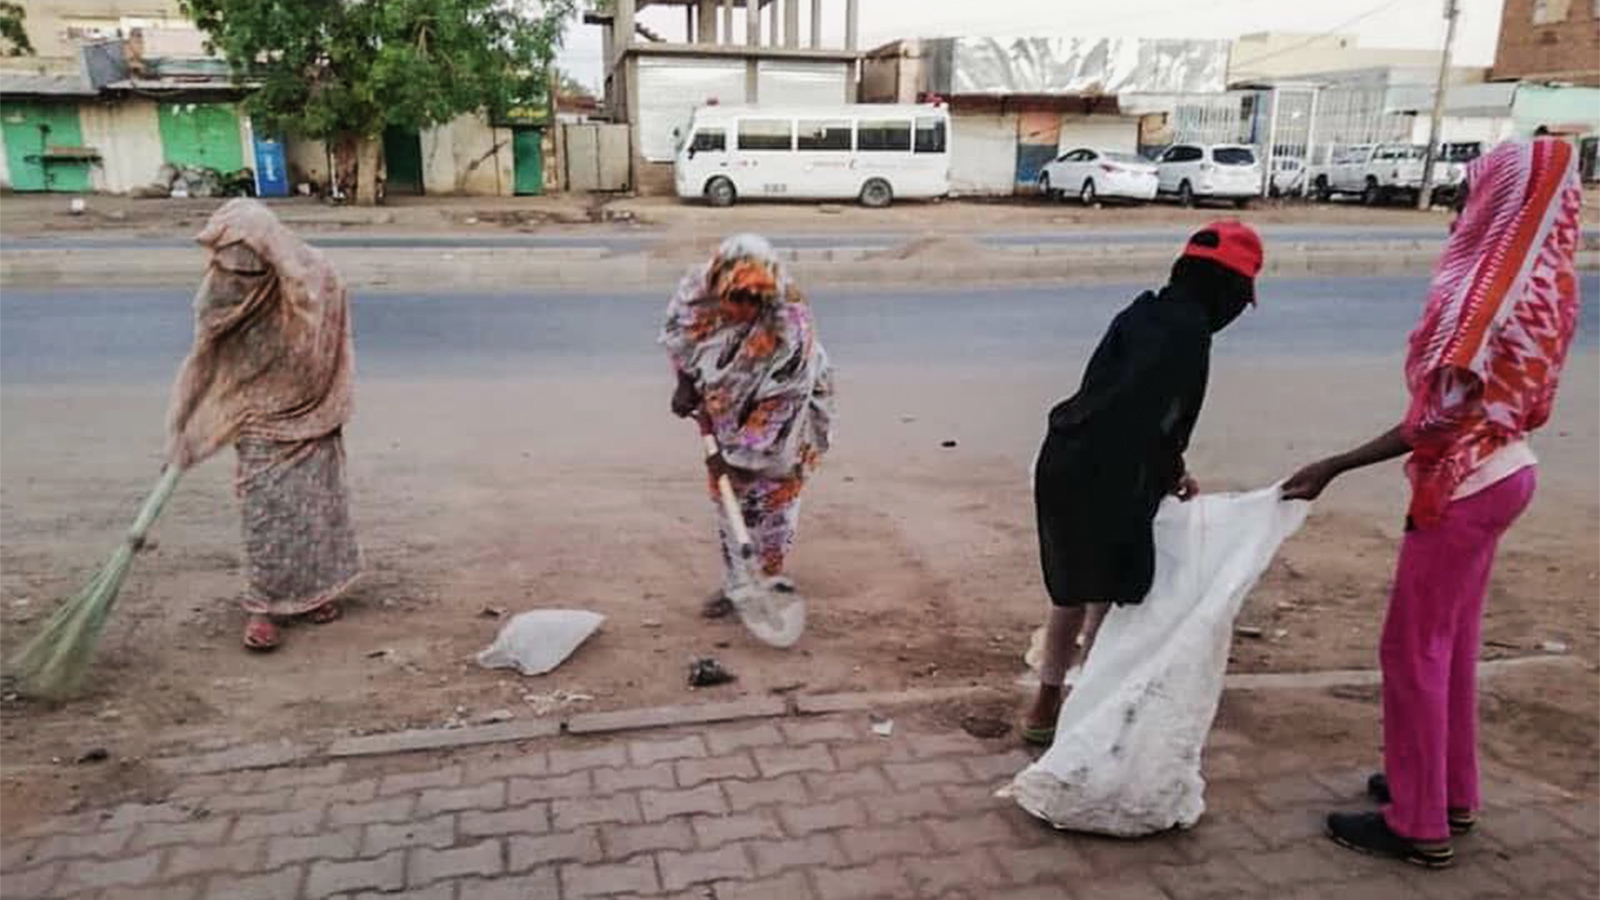 ‪السودانيون استجابوا لحملة تجمع المهنيين الداعية إلى تنظيف شوارع الخرطوم (مواقع التواصل)‬ السودانيون استجابوا لحملة تجمع المهنيين الداعية إلى تنظيف شوارع الخرطوم (مواقع التواصل)